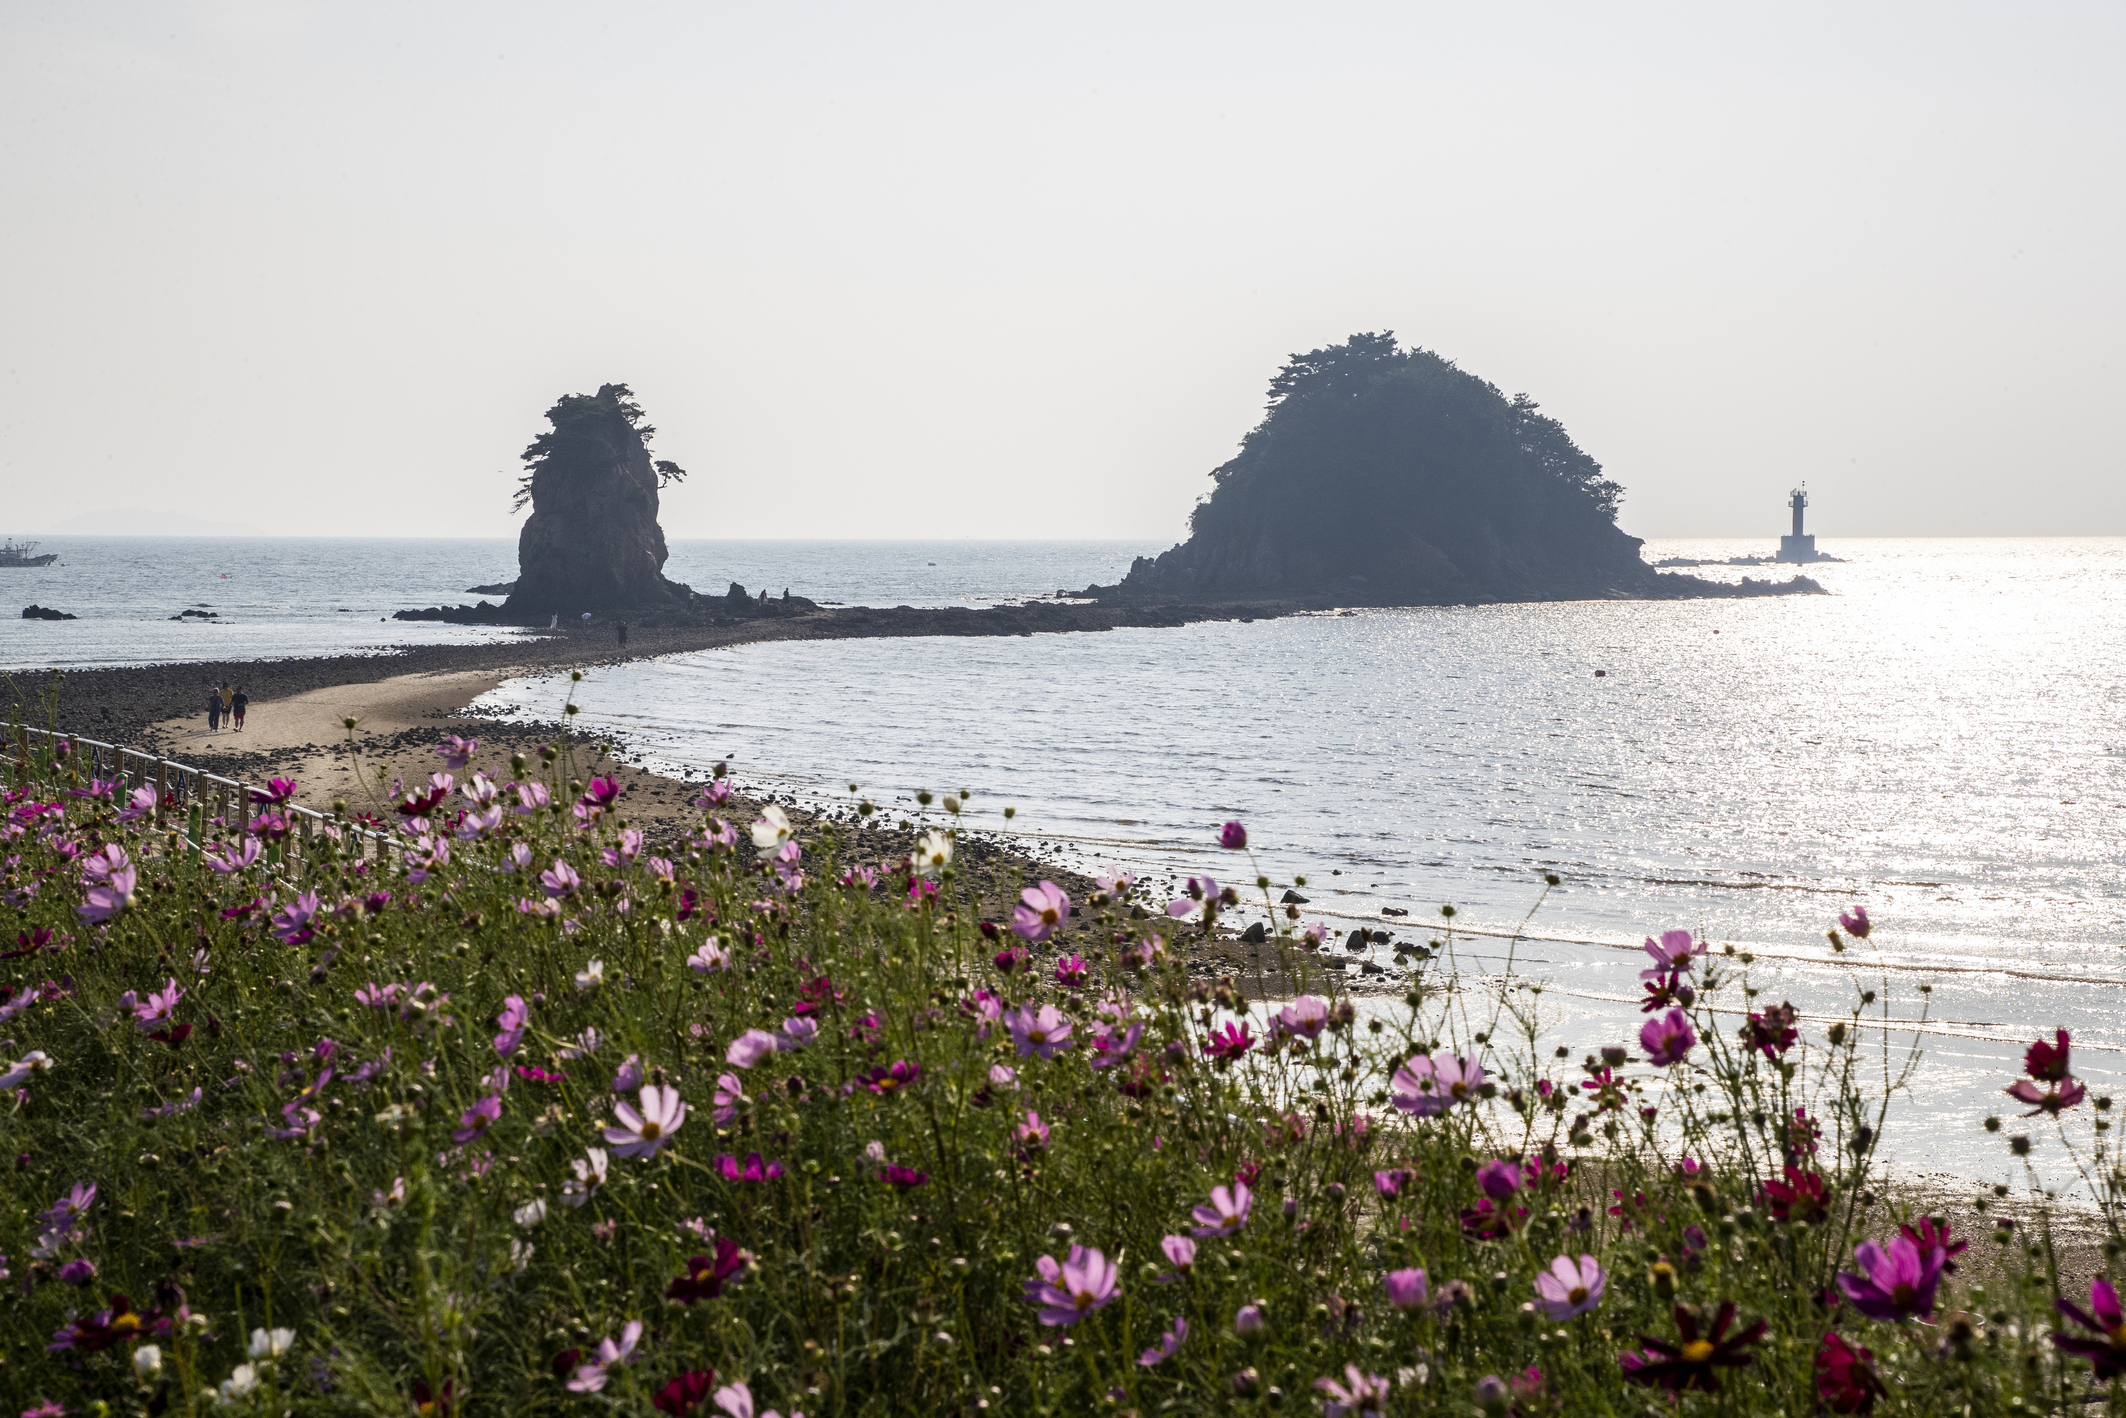 Insel Anmyeondo bei Taean